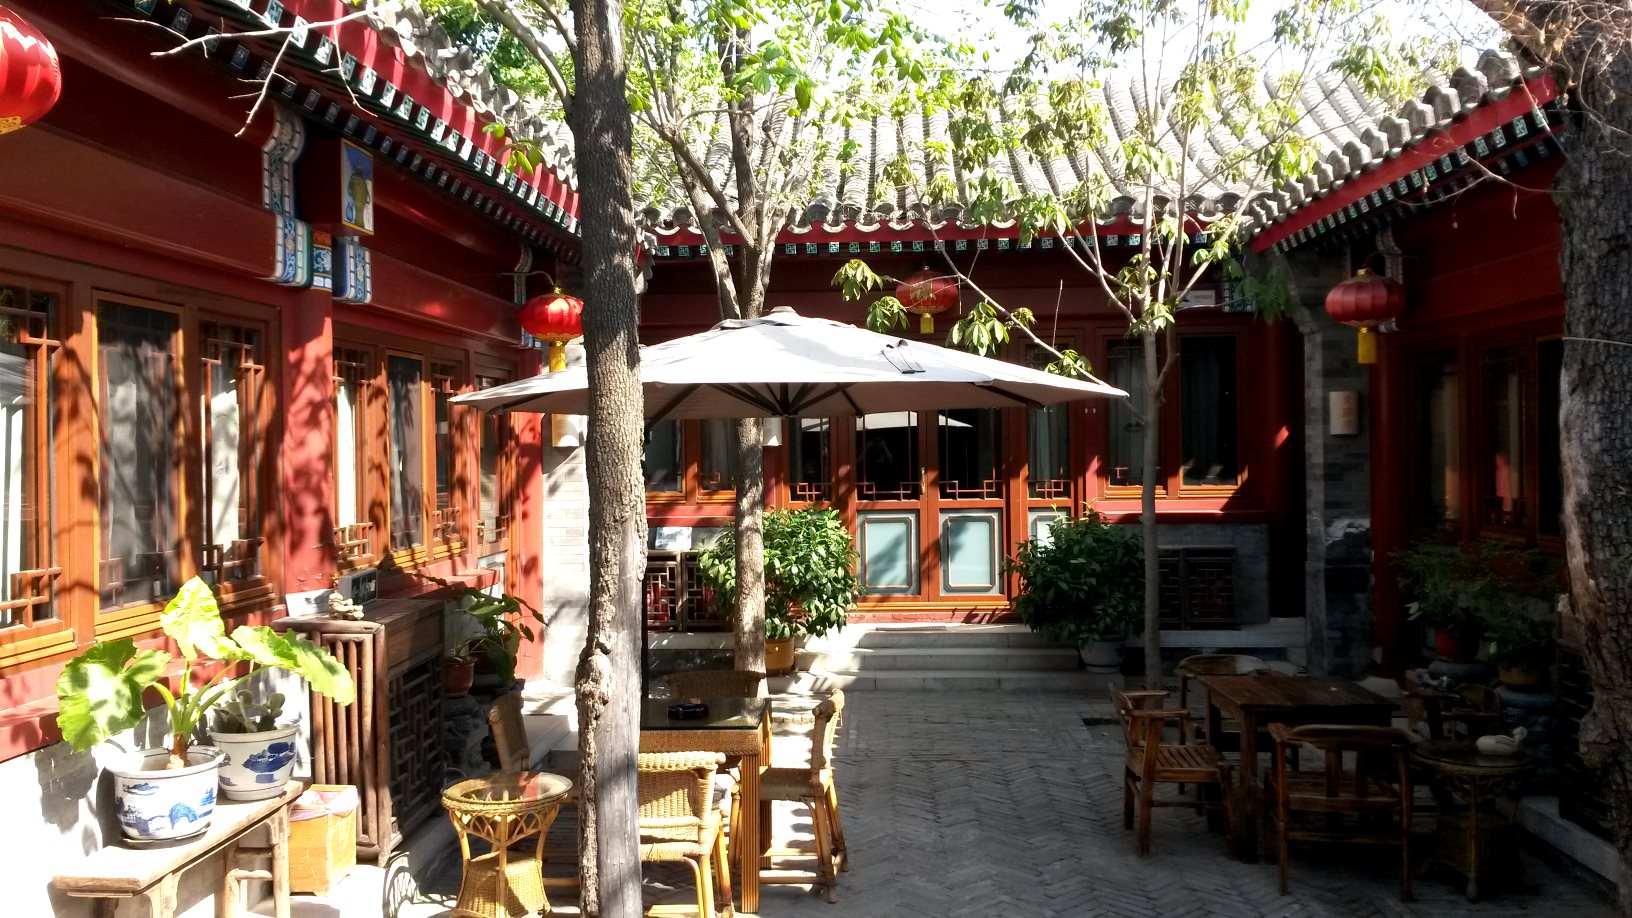 2015 peking (112) ji house courtyard hotel